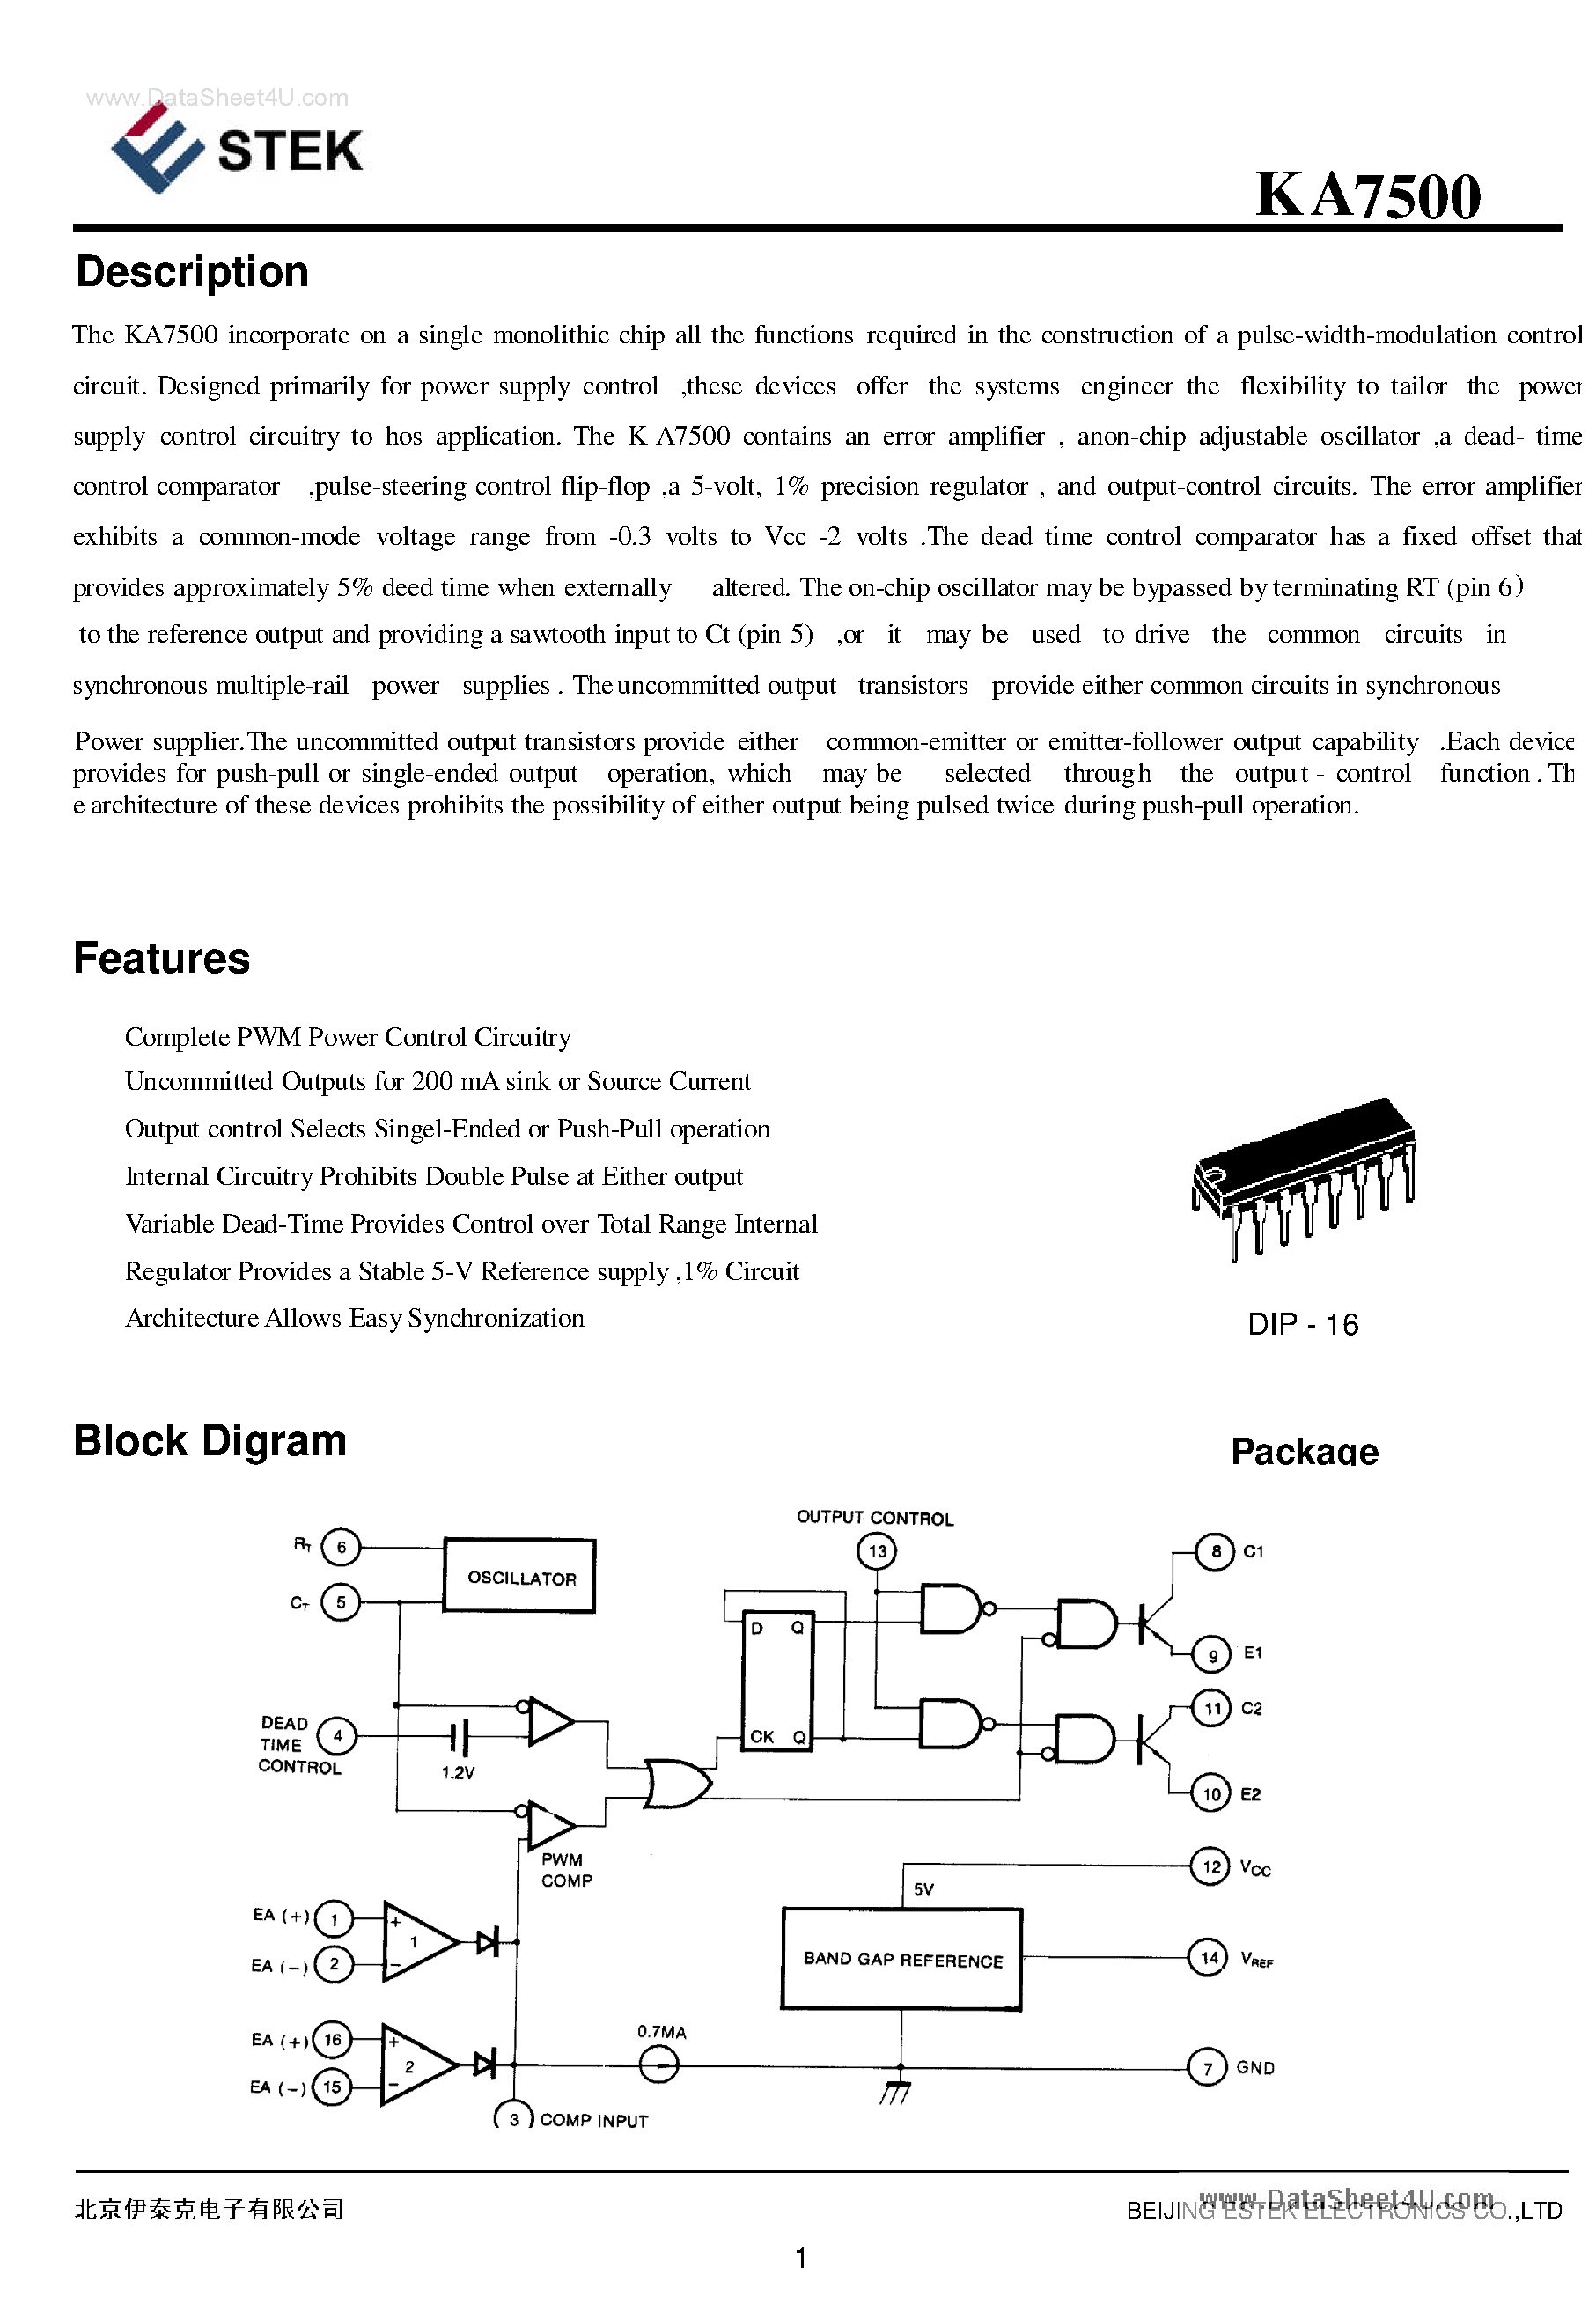 Datasheet KA7500 - single monolithic chip page 1